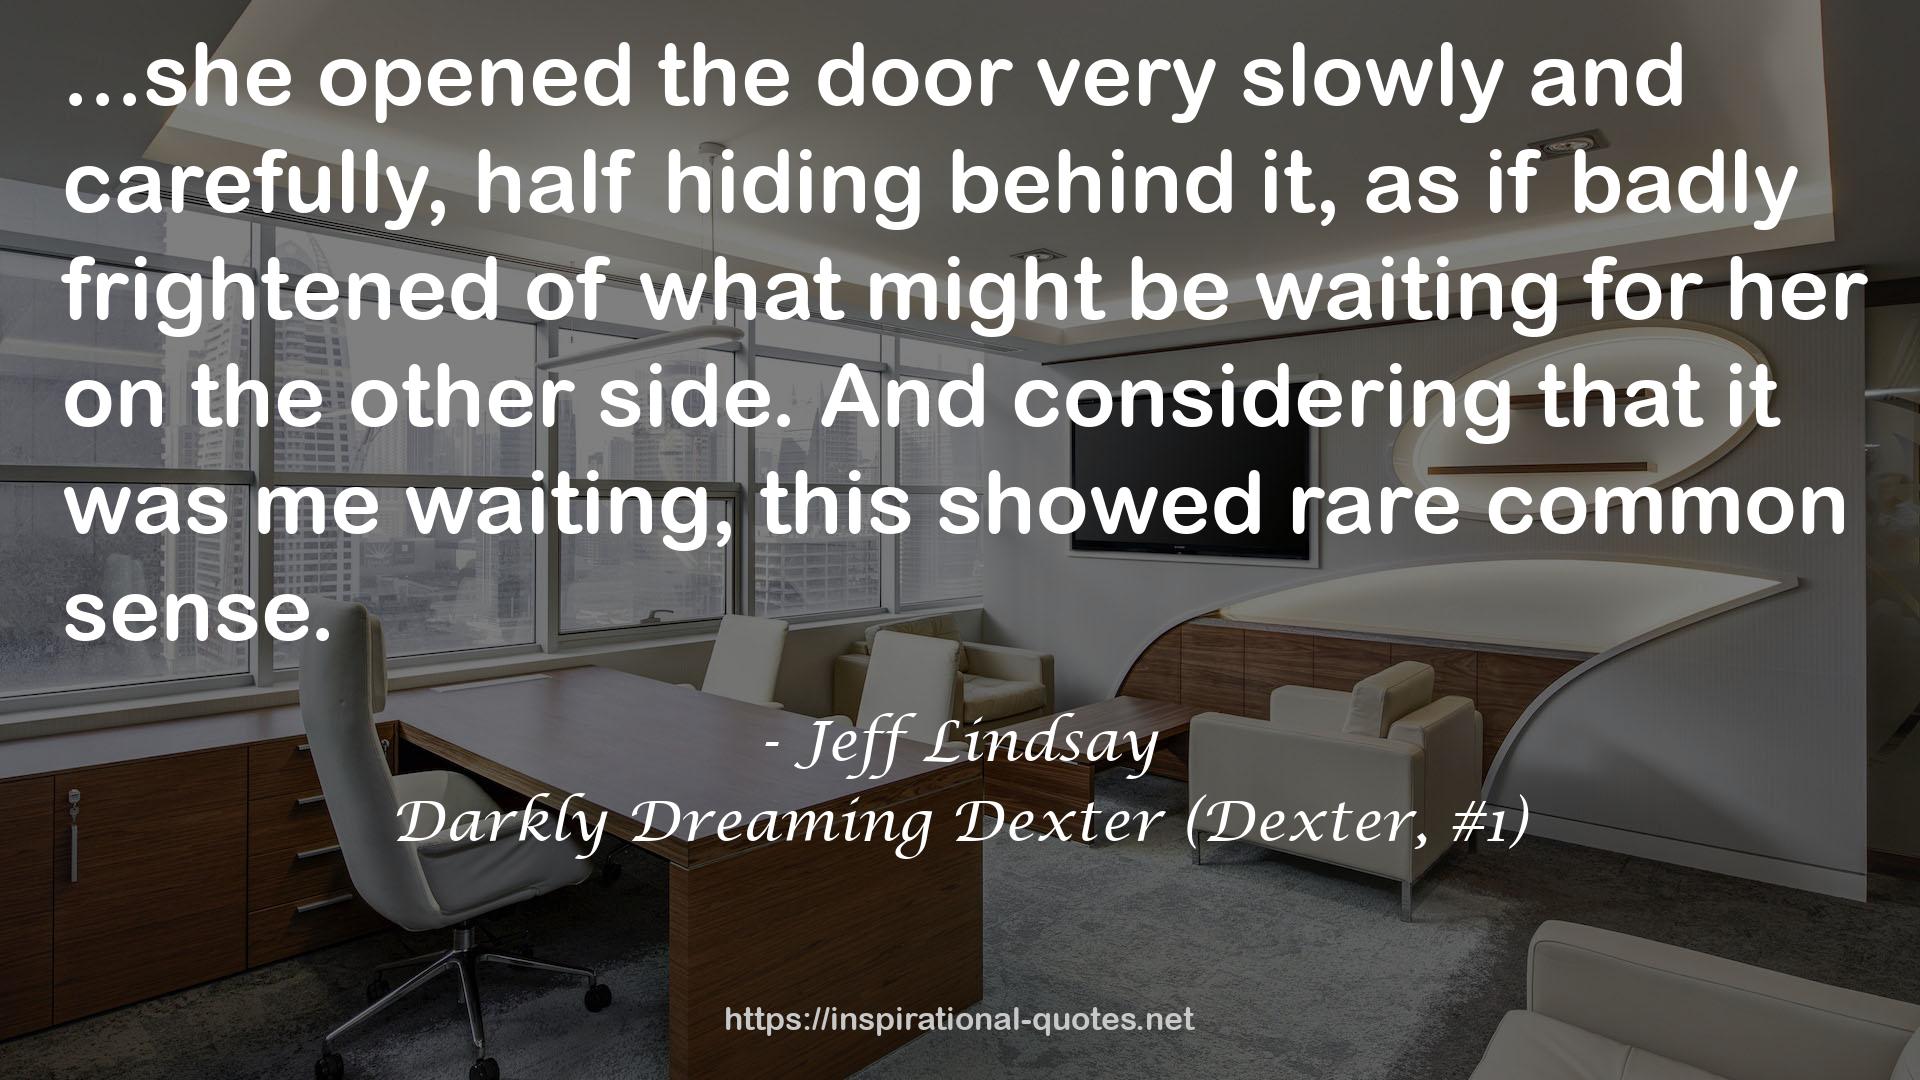 Darkly Dreaming Dexter (Dexter, #1) QUOTES